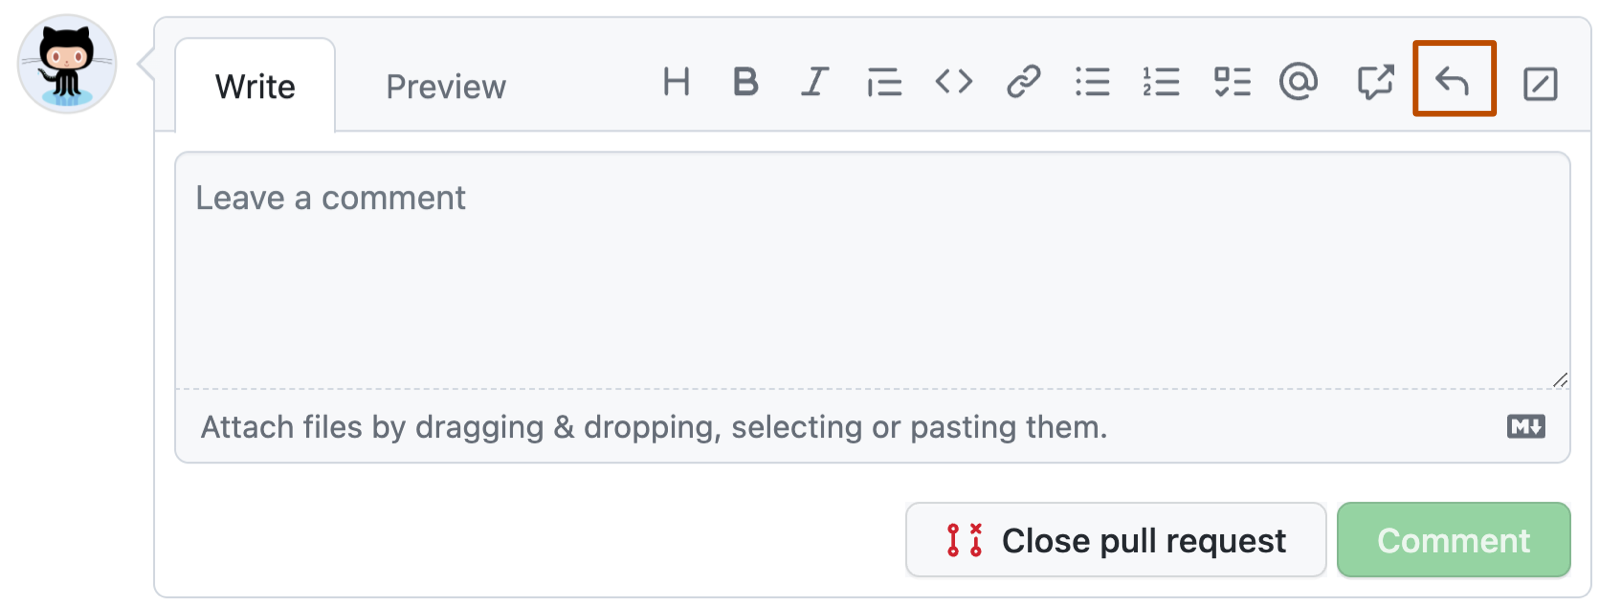 Captura de pantalla de un cuadro de comentario GitHub. En la barra de herramientas, un botón de respuesta con una flecha curva hacia la izquierda aparece en naranja oscuro.